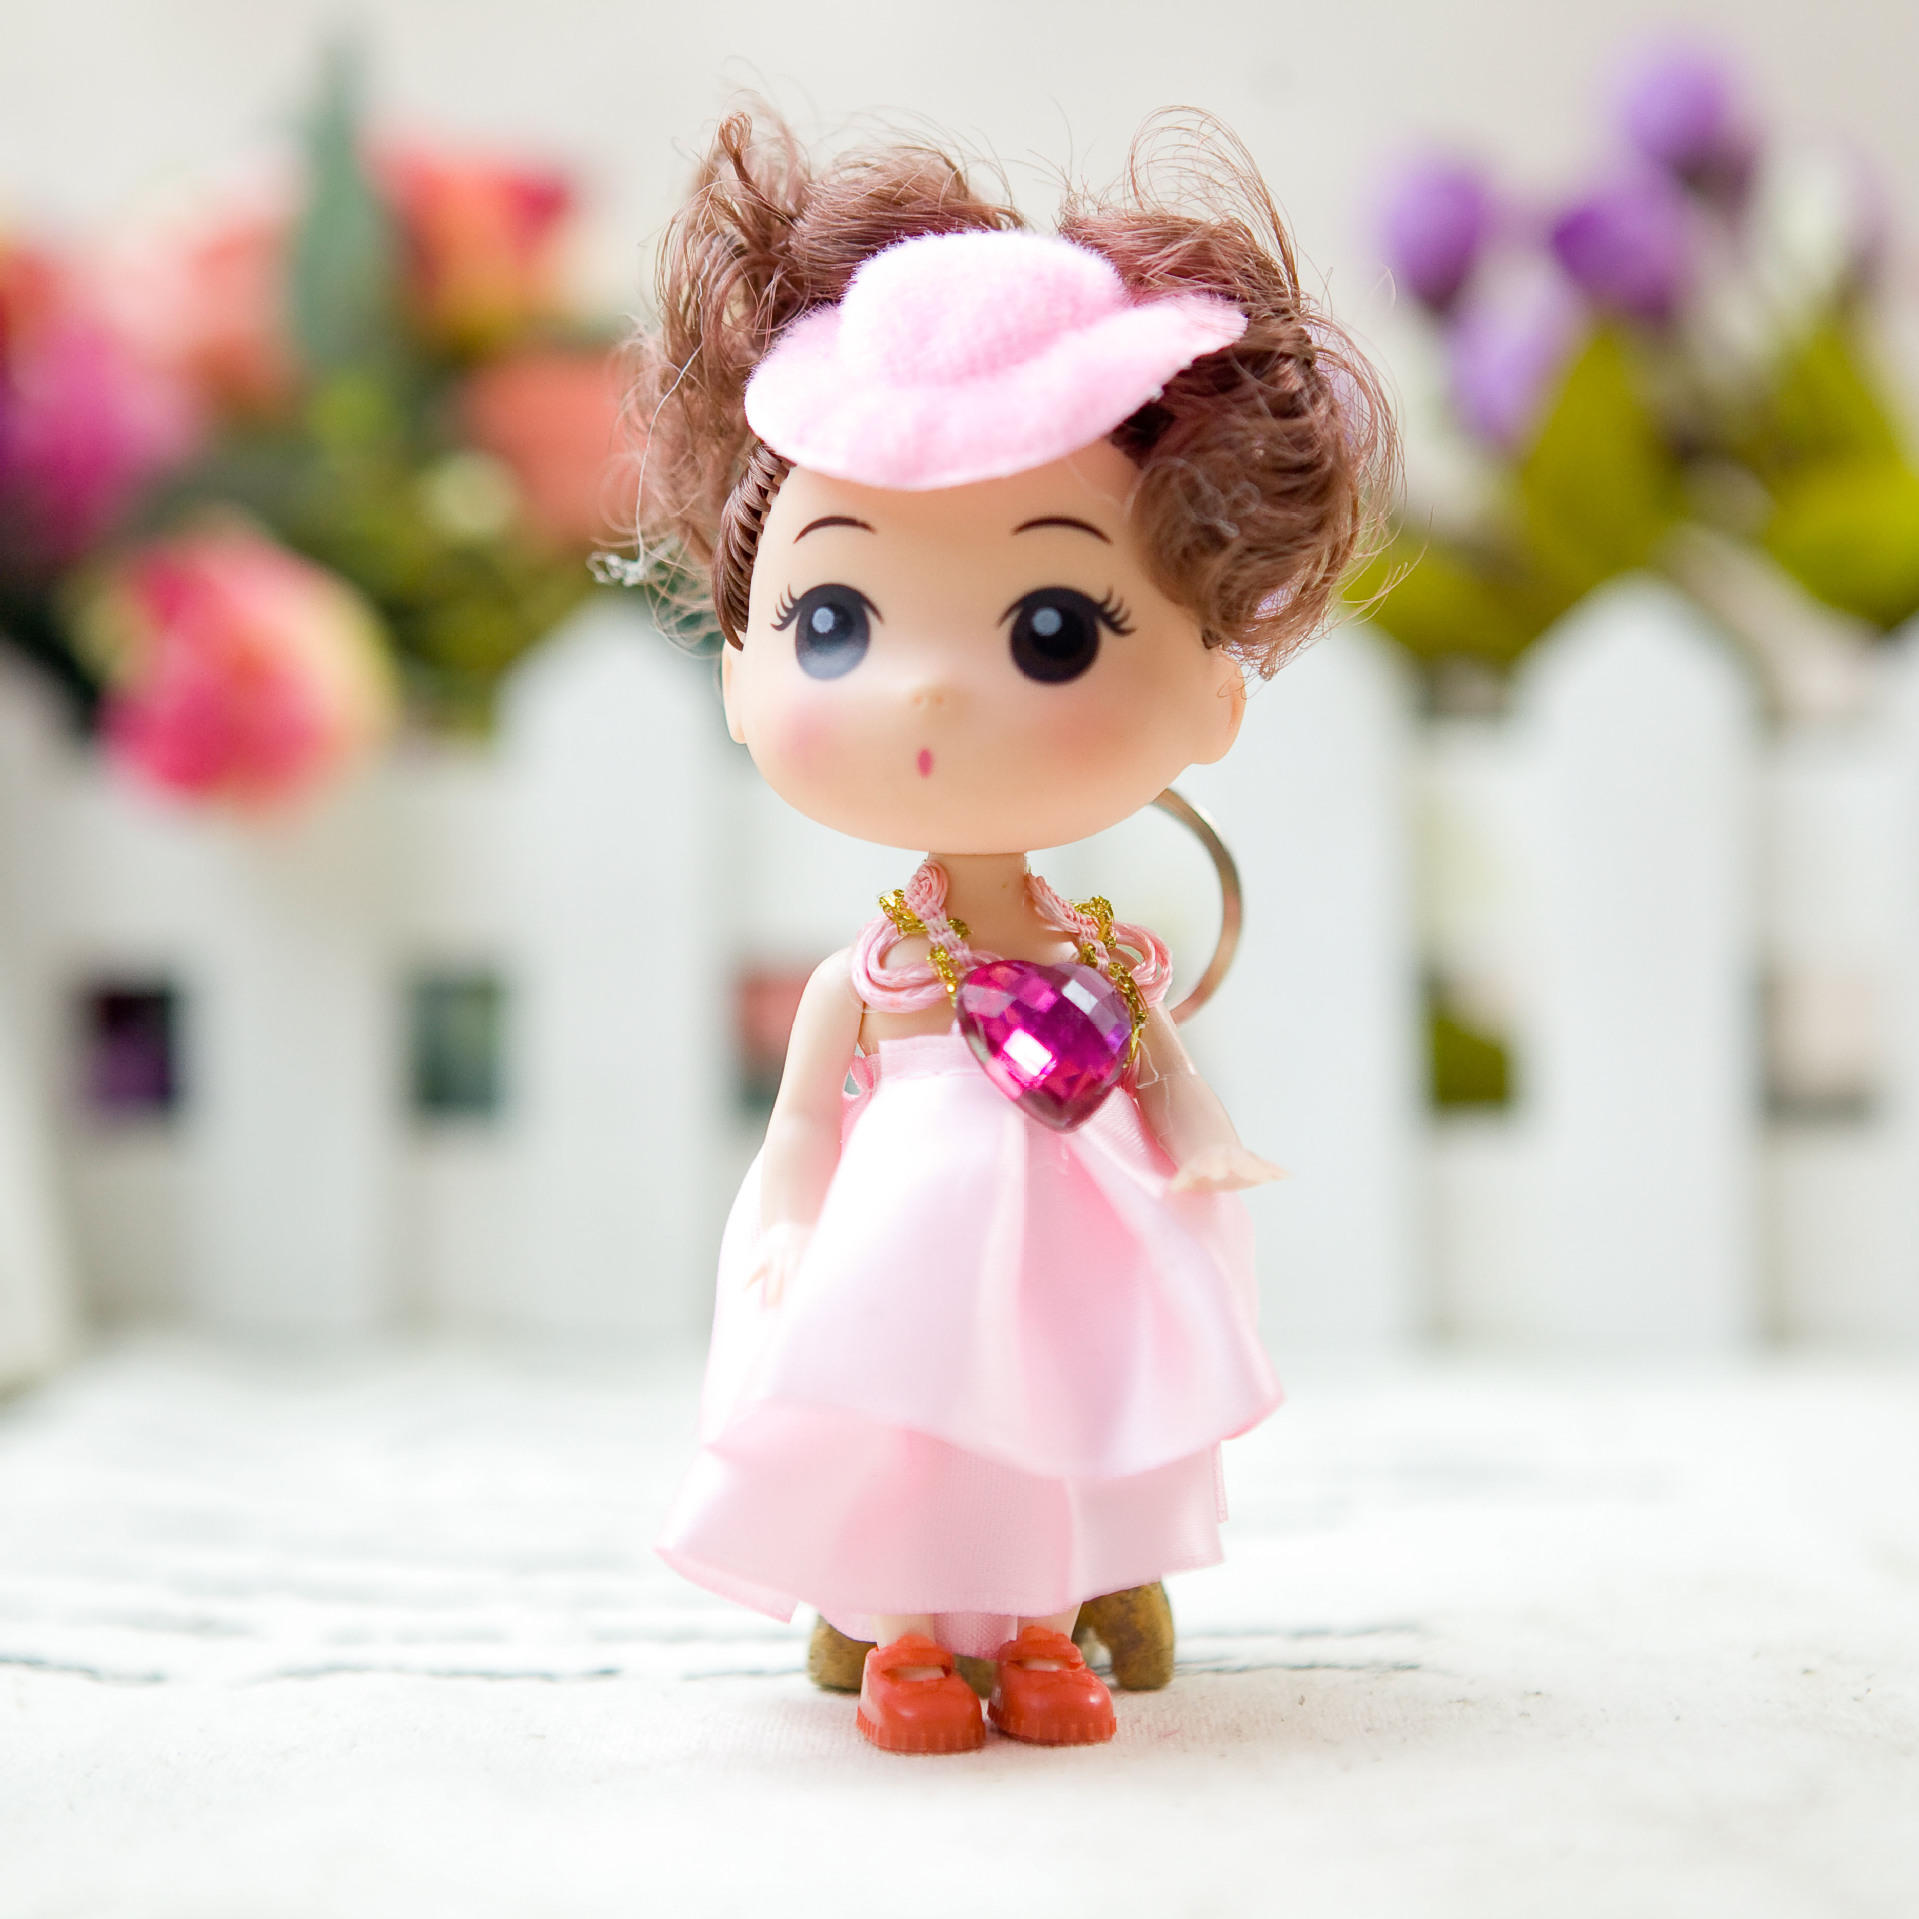 2014俏皮迷糊娃娃公仔12cm芭比娃娃批发中国可儿娃娃时尚公仔玩具